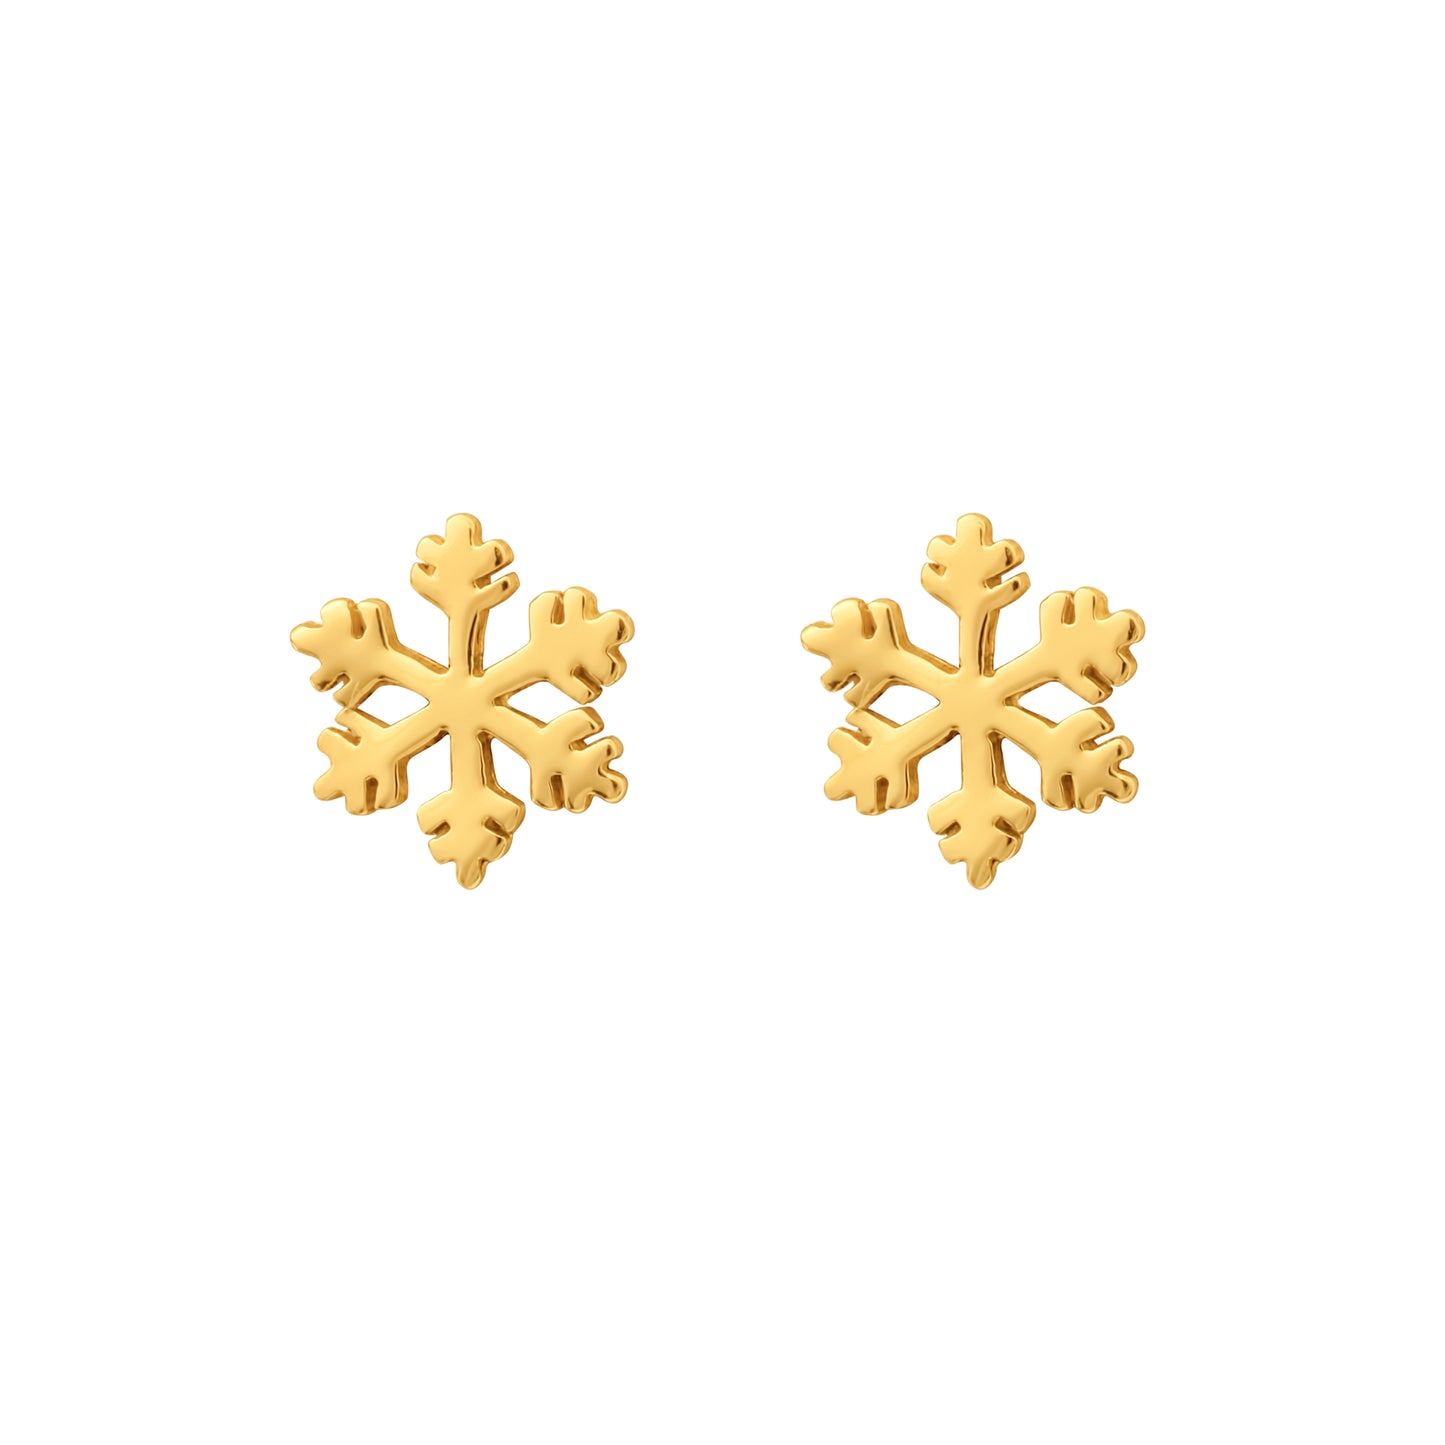 Goldtone Plated Sterling Silver Snowflake Stud Earrings